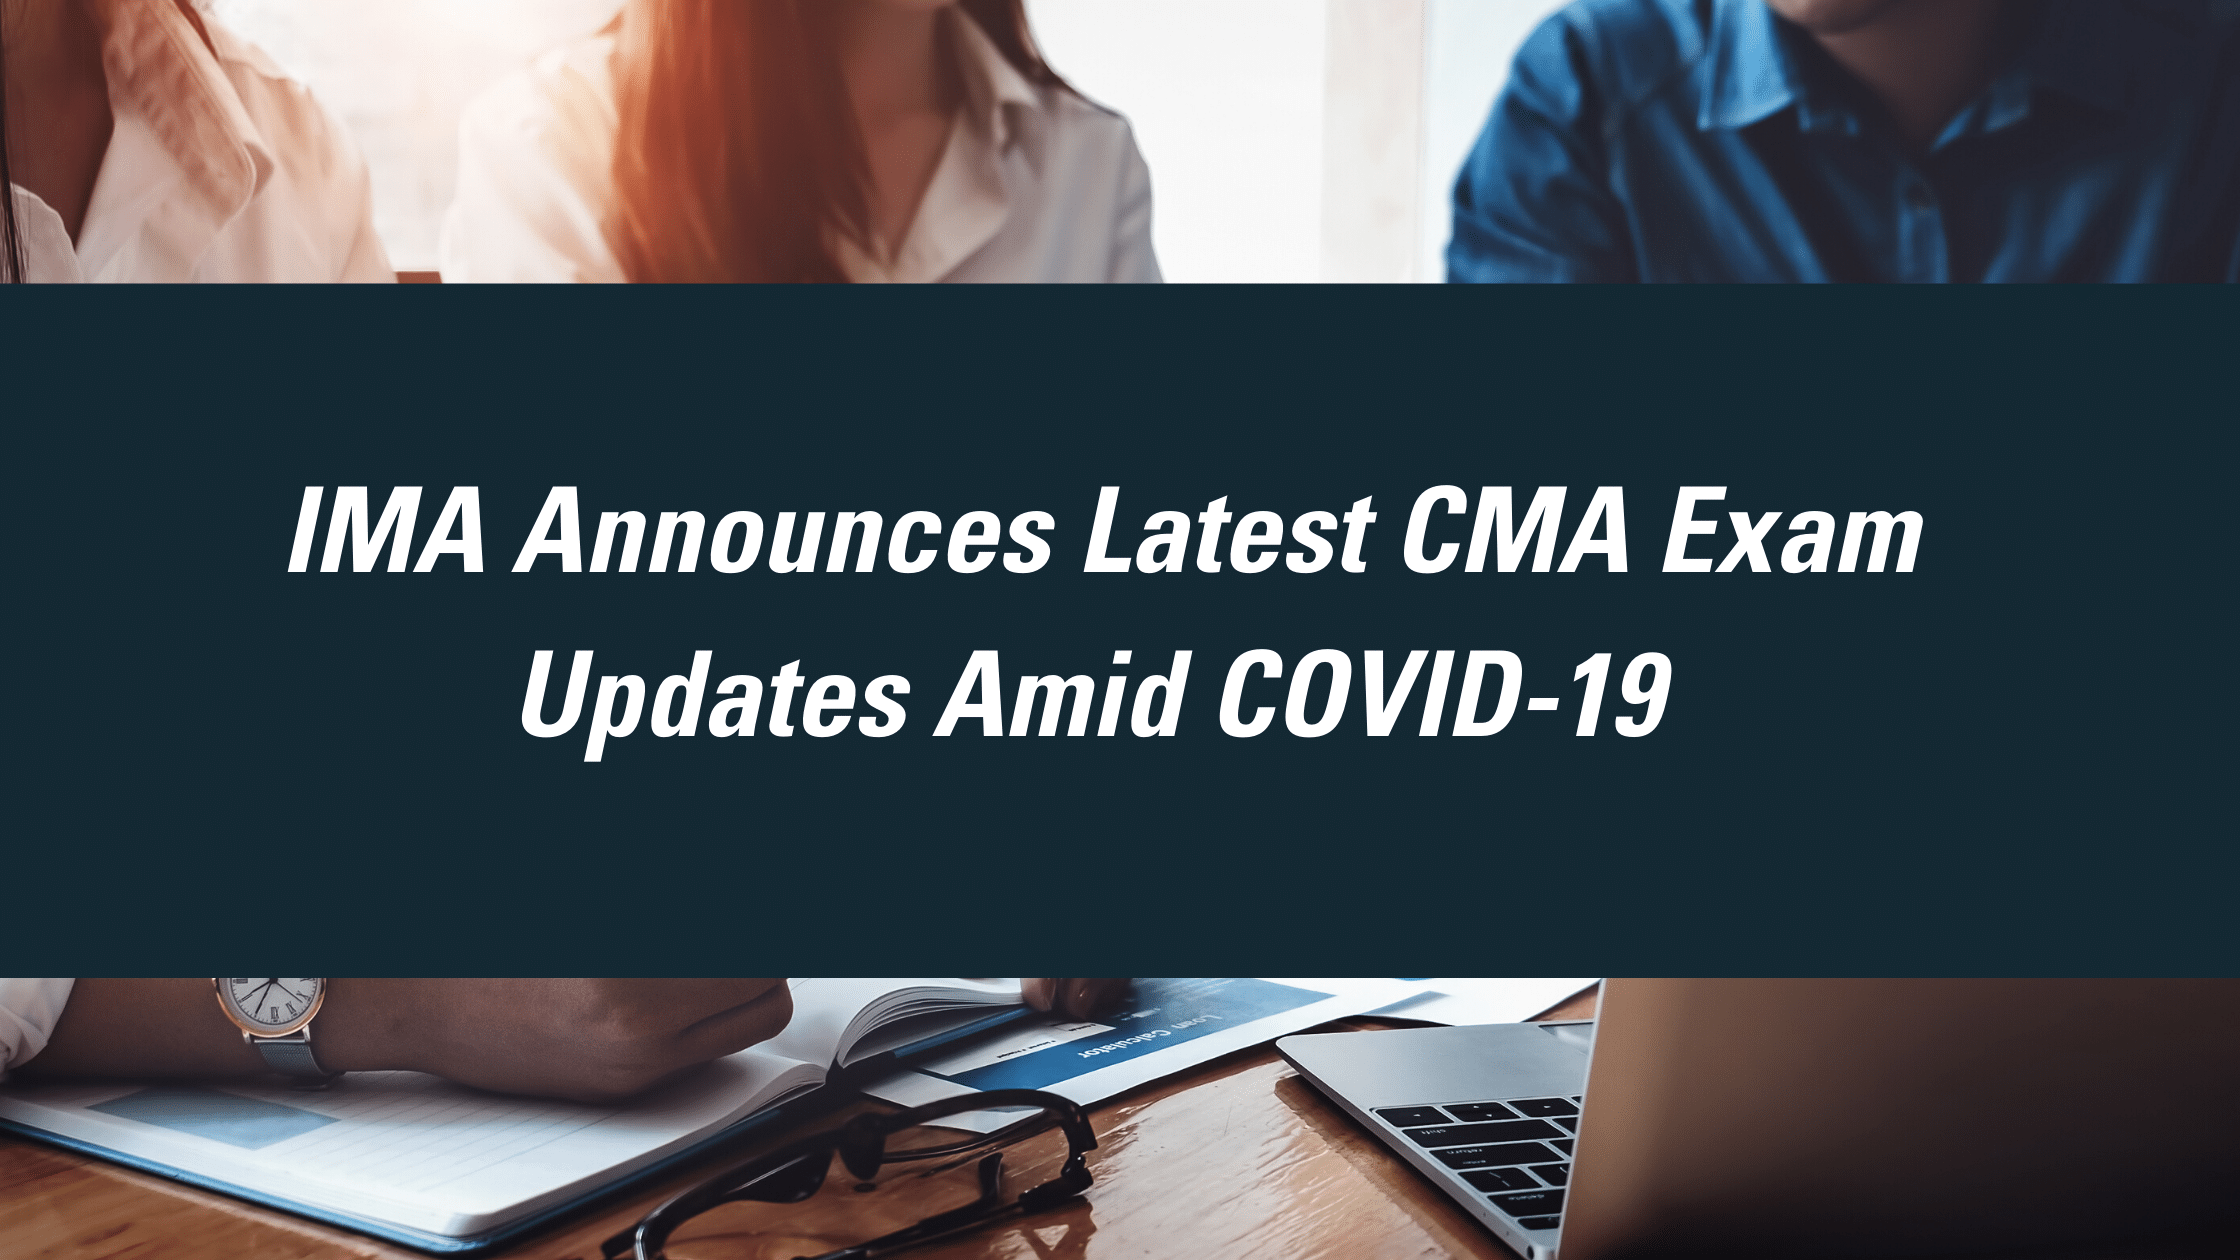 IMA Announces Latest CMA Exam Updates Amid COVID-19